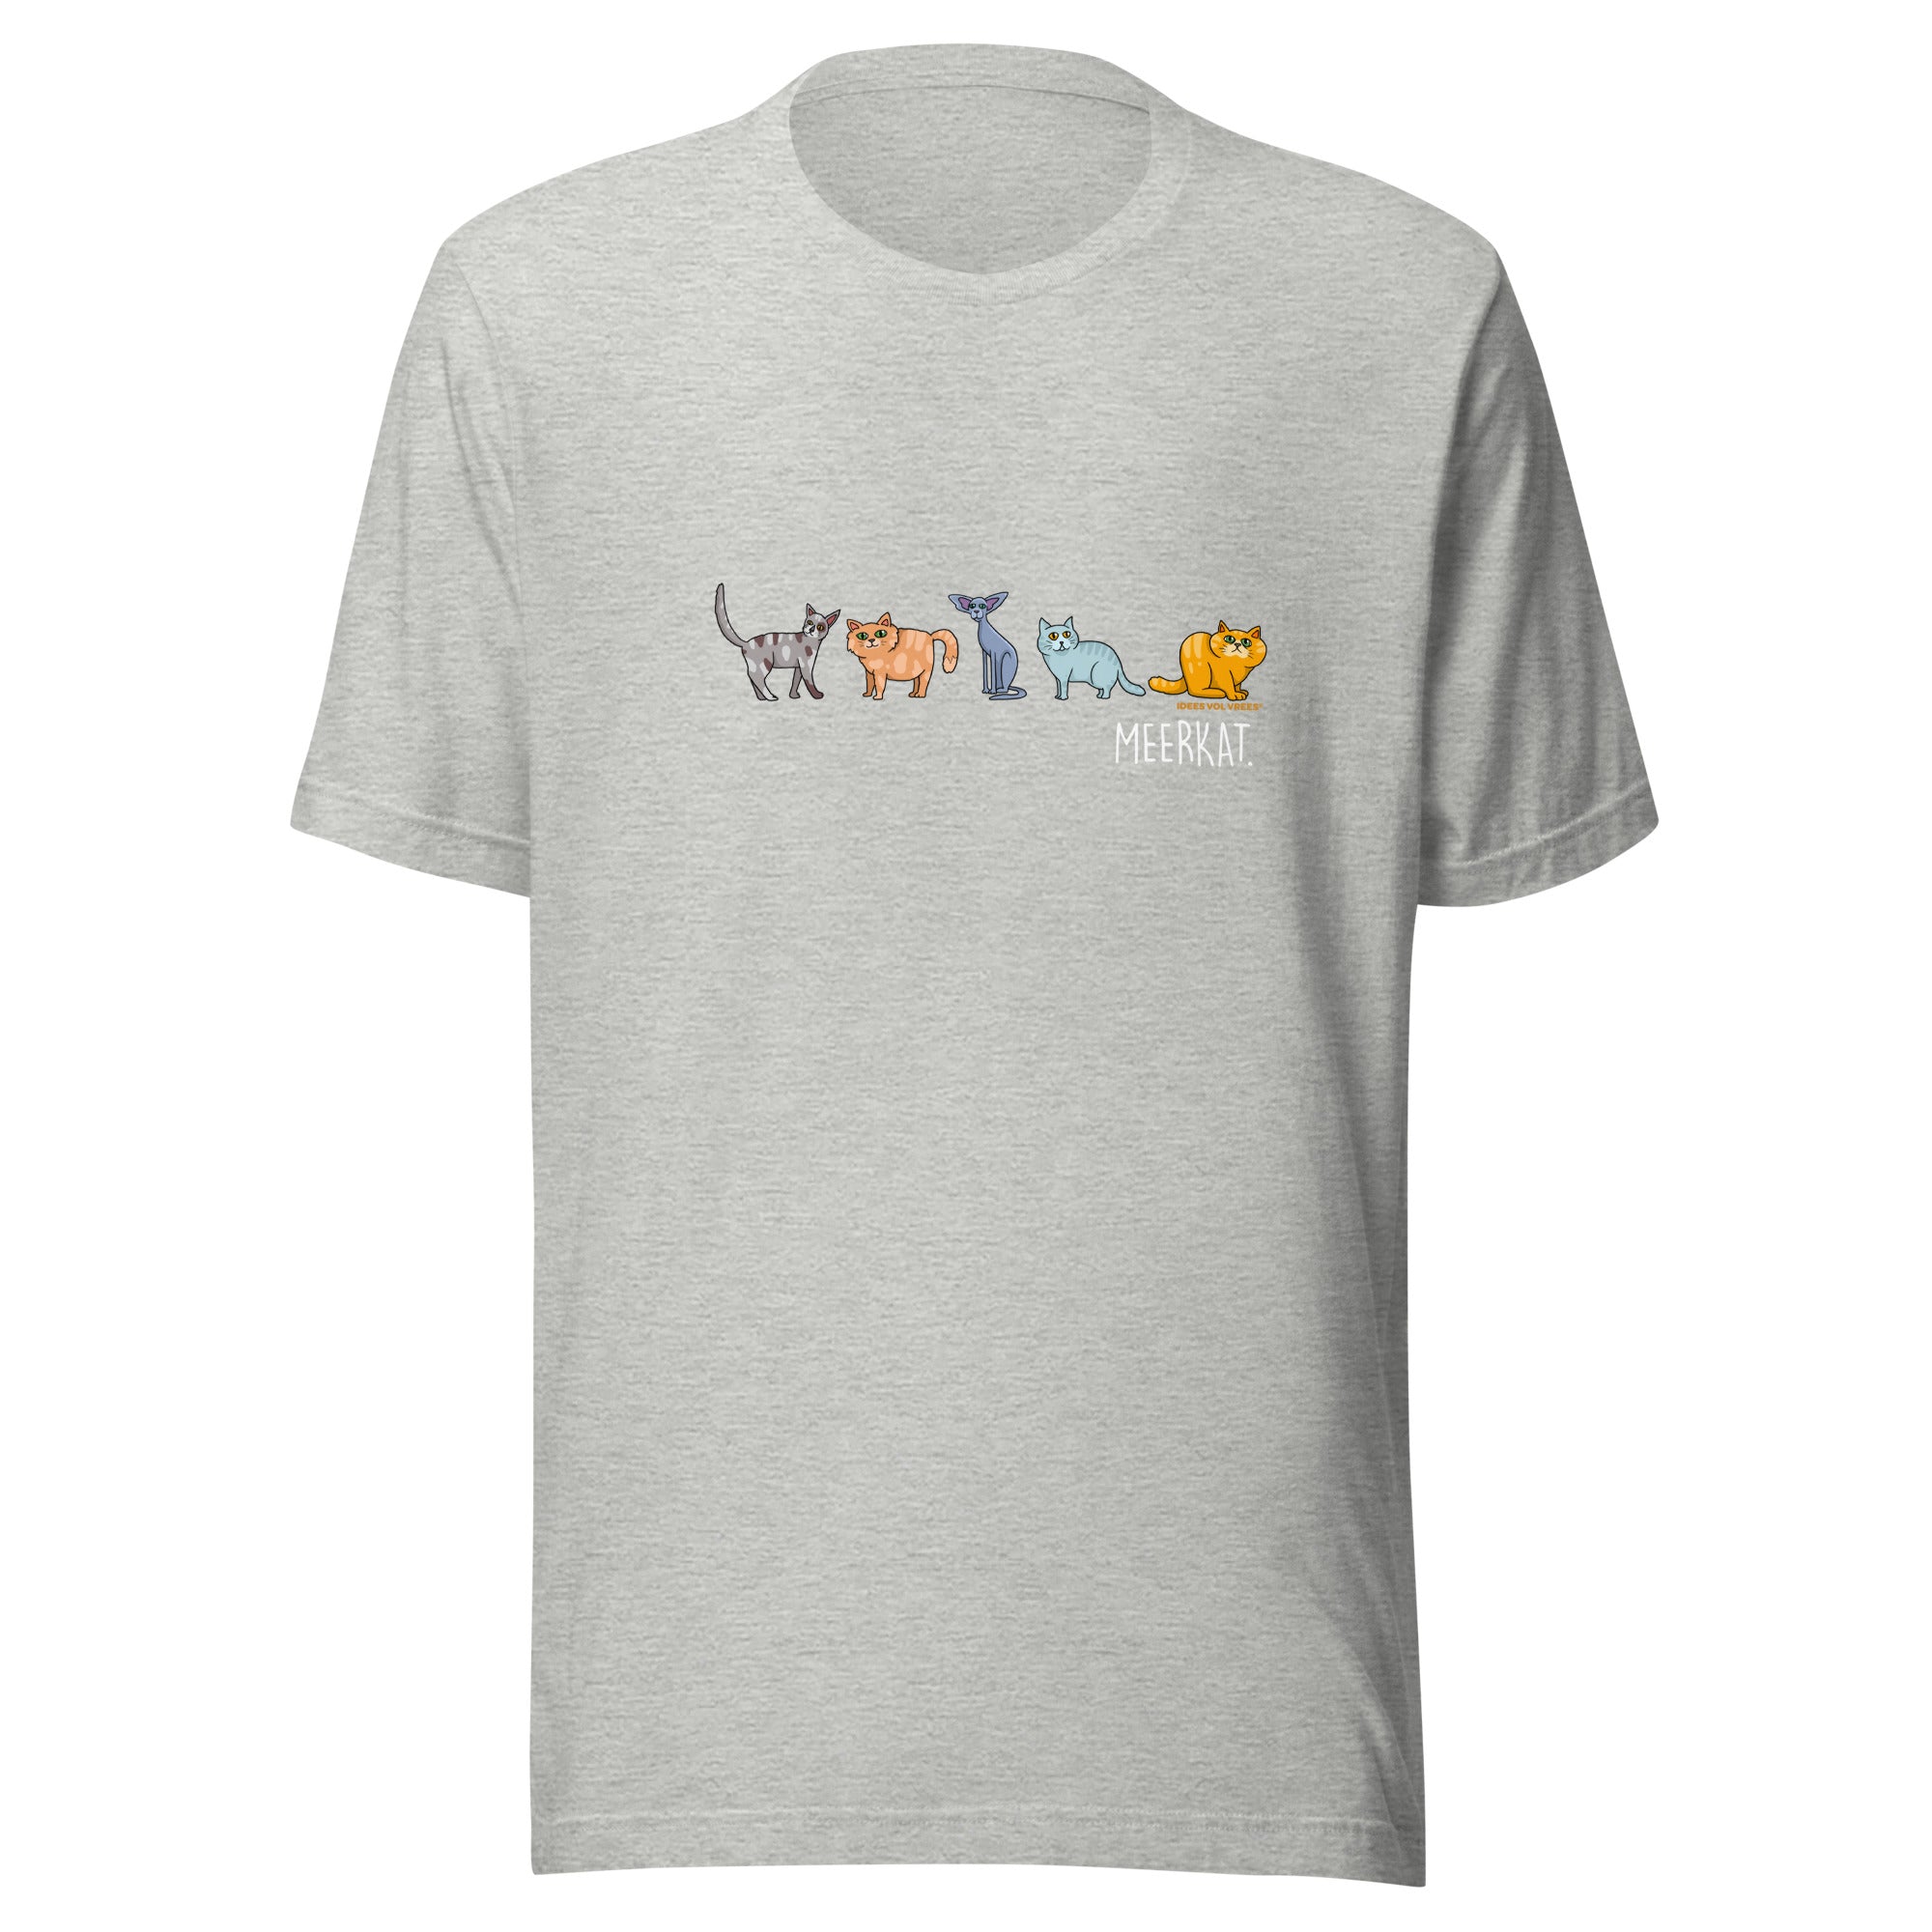 [INTERNASIONAAL] Idees Vol Vrees® Meerkat Women's T-shirt